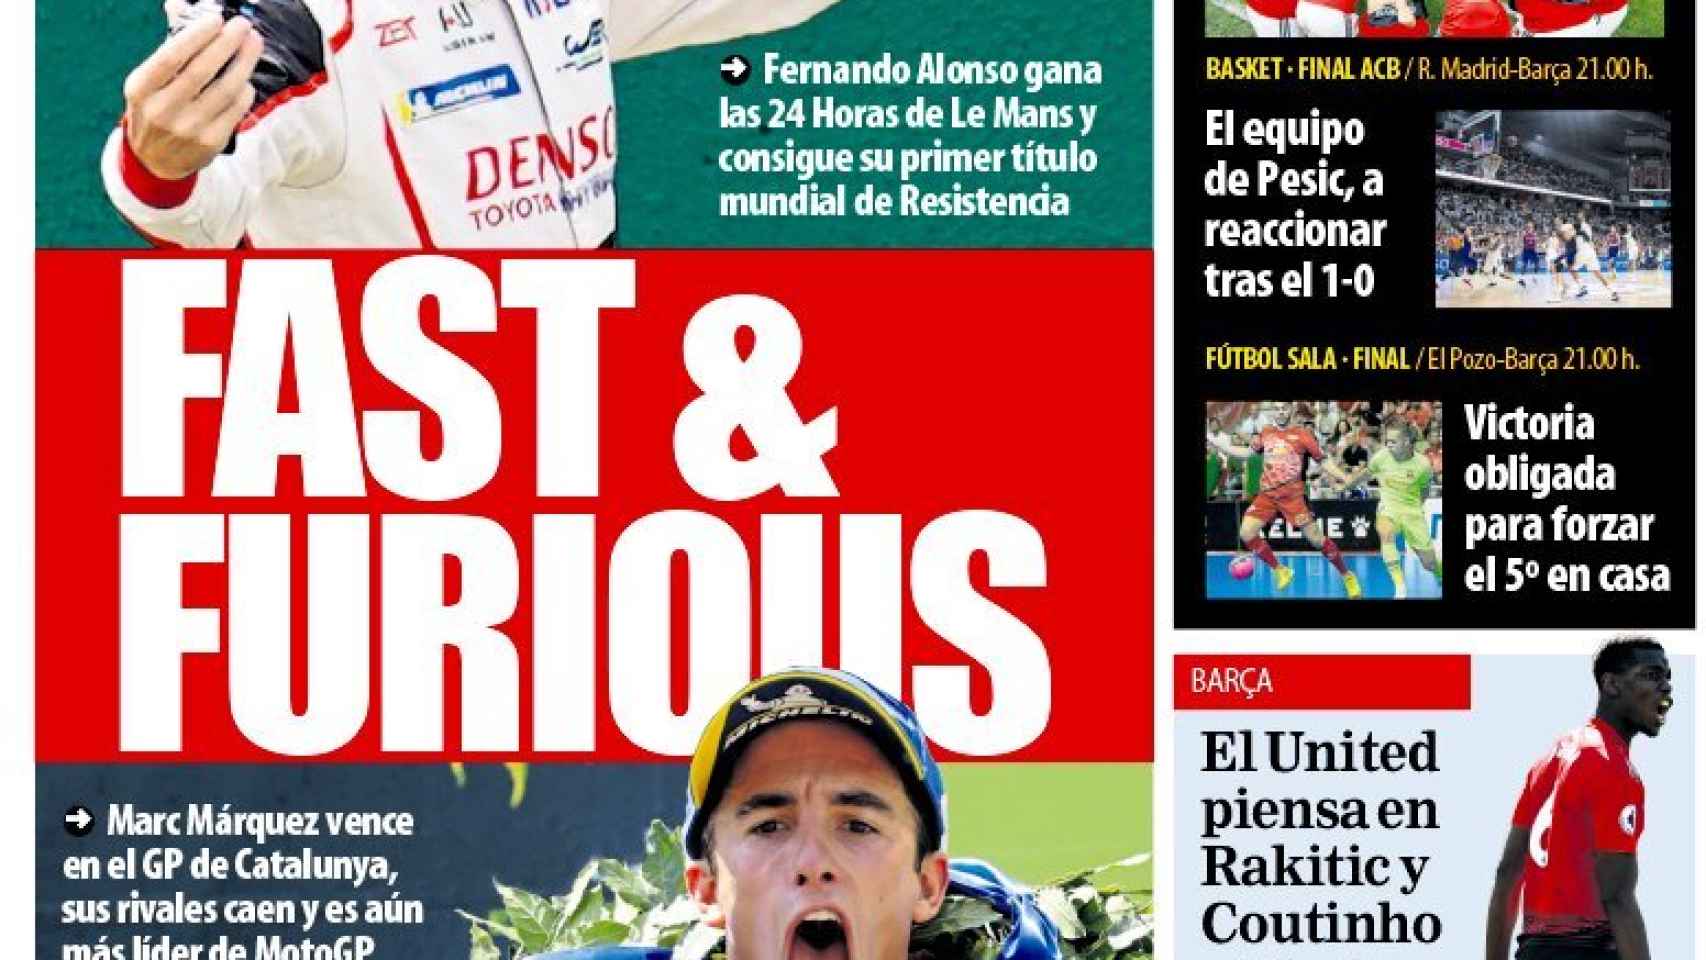 La portada del diario Mundo Deportivo (17/06/2019)